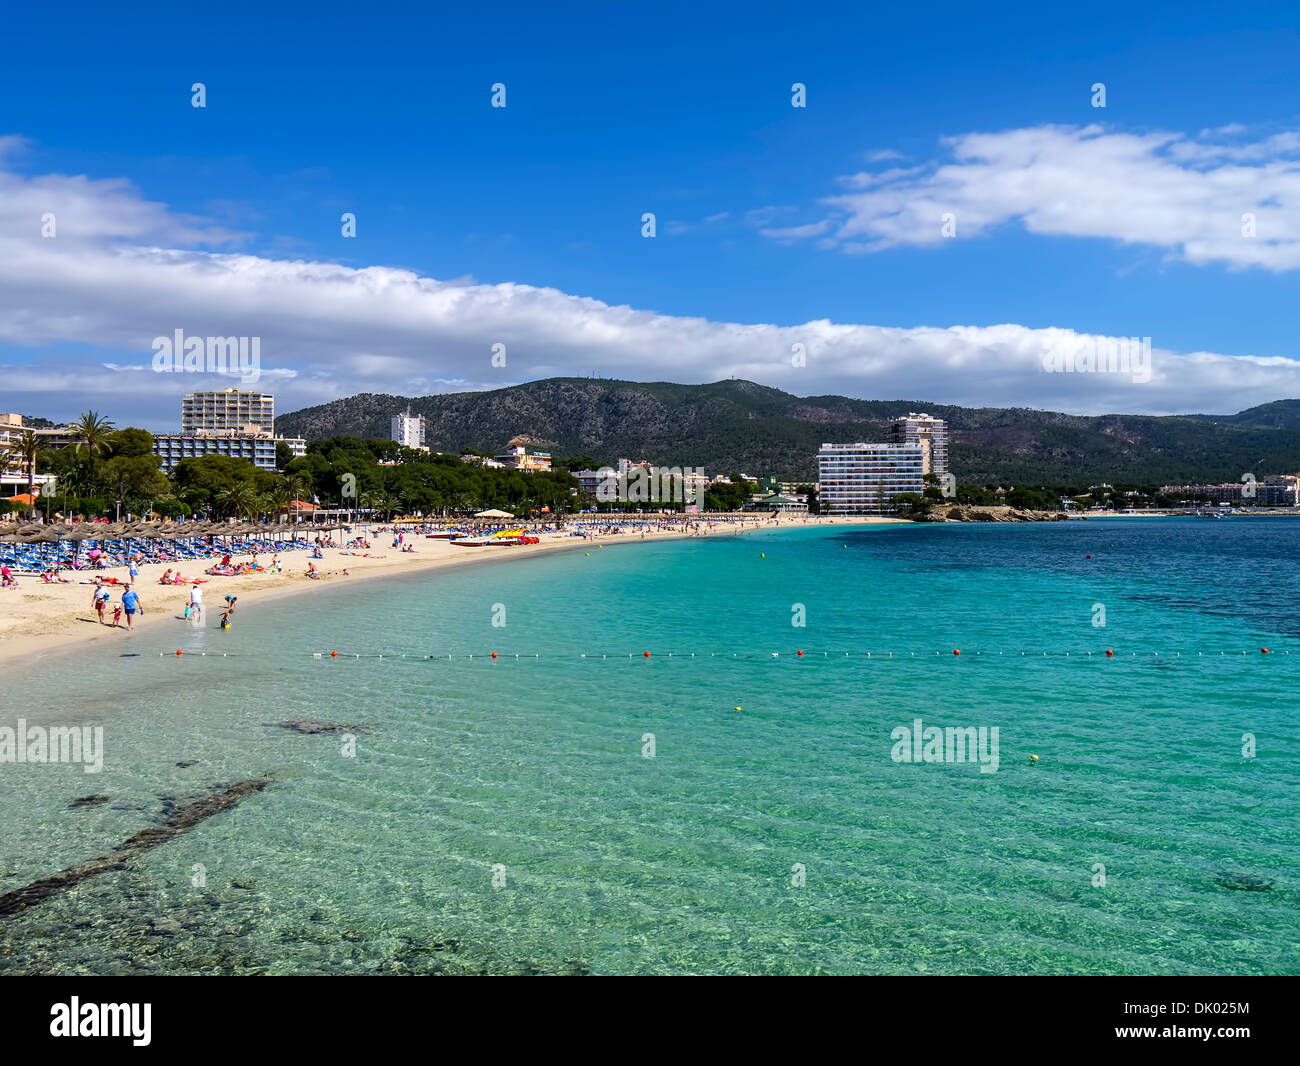 Palma Nova on the island of Majorca Spain Stock Photo